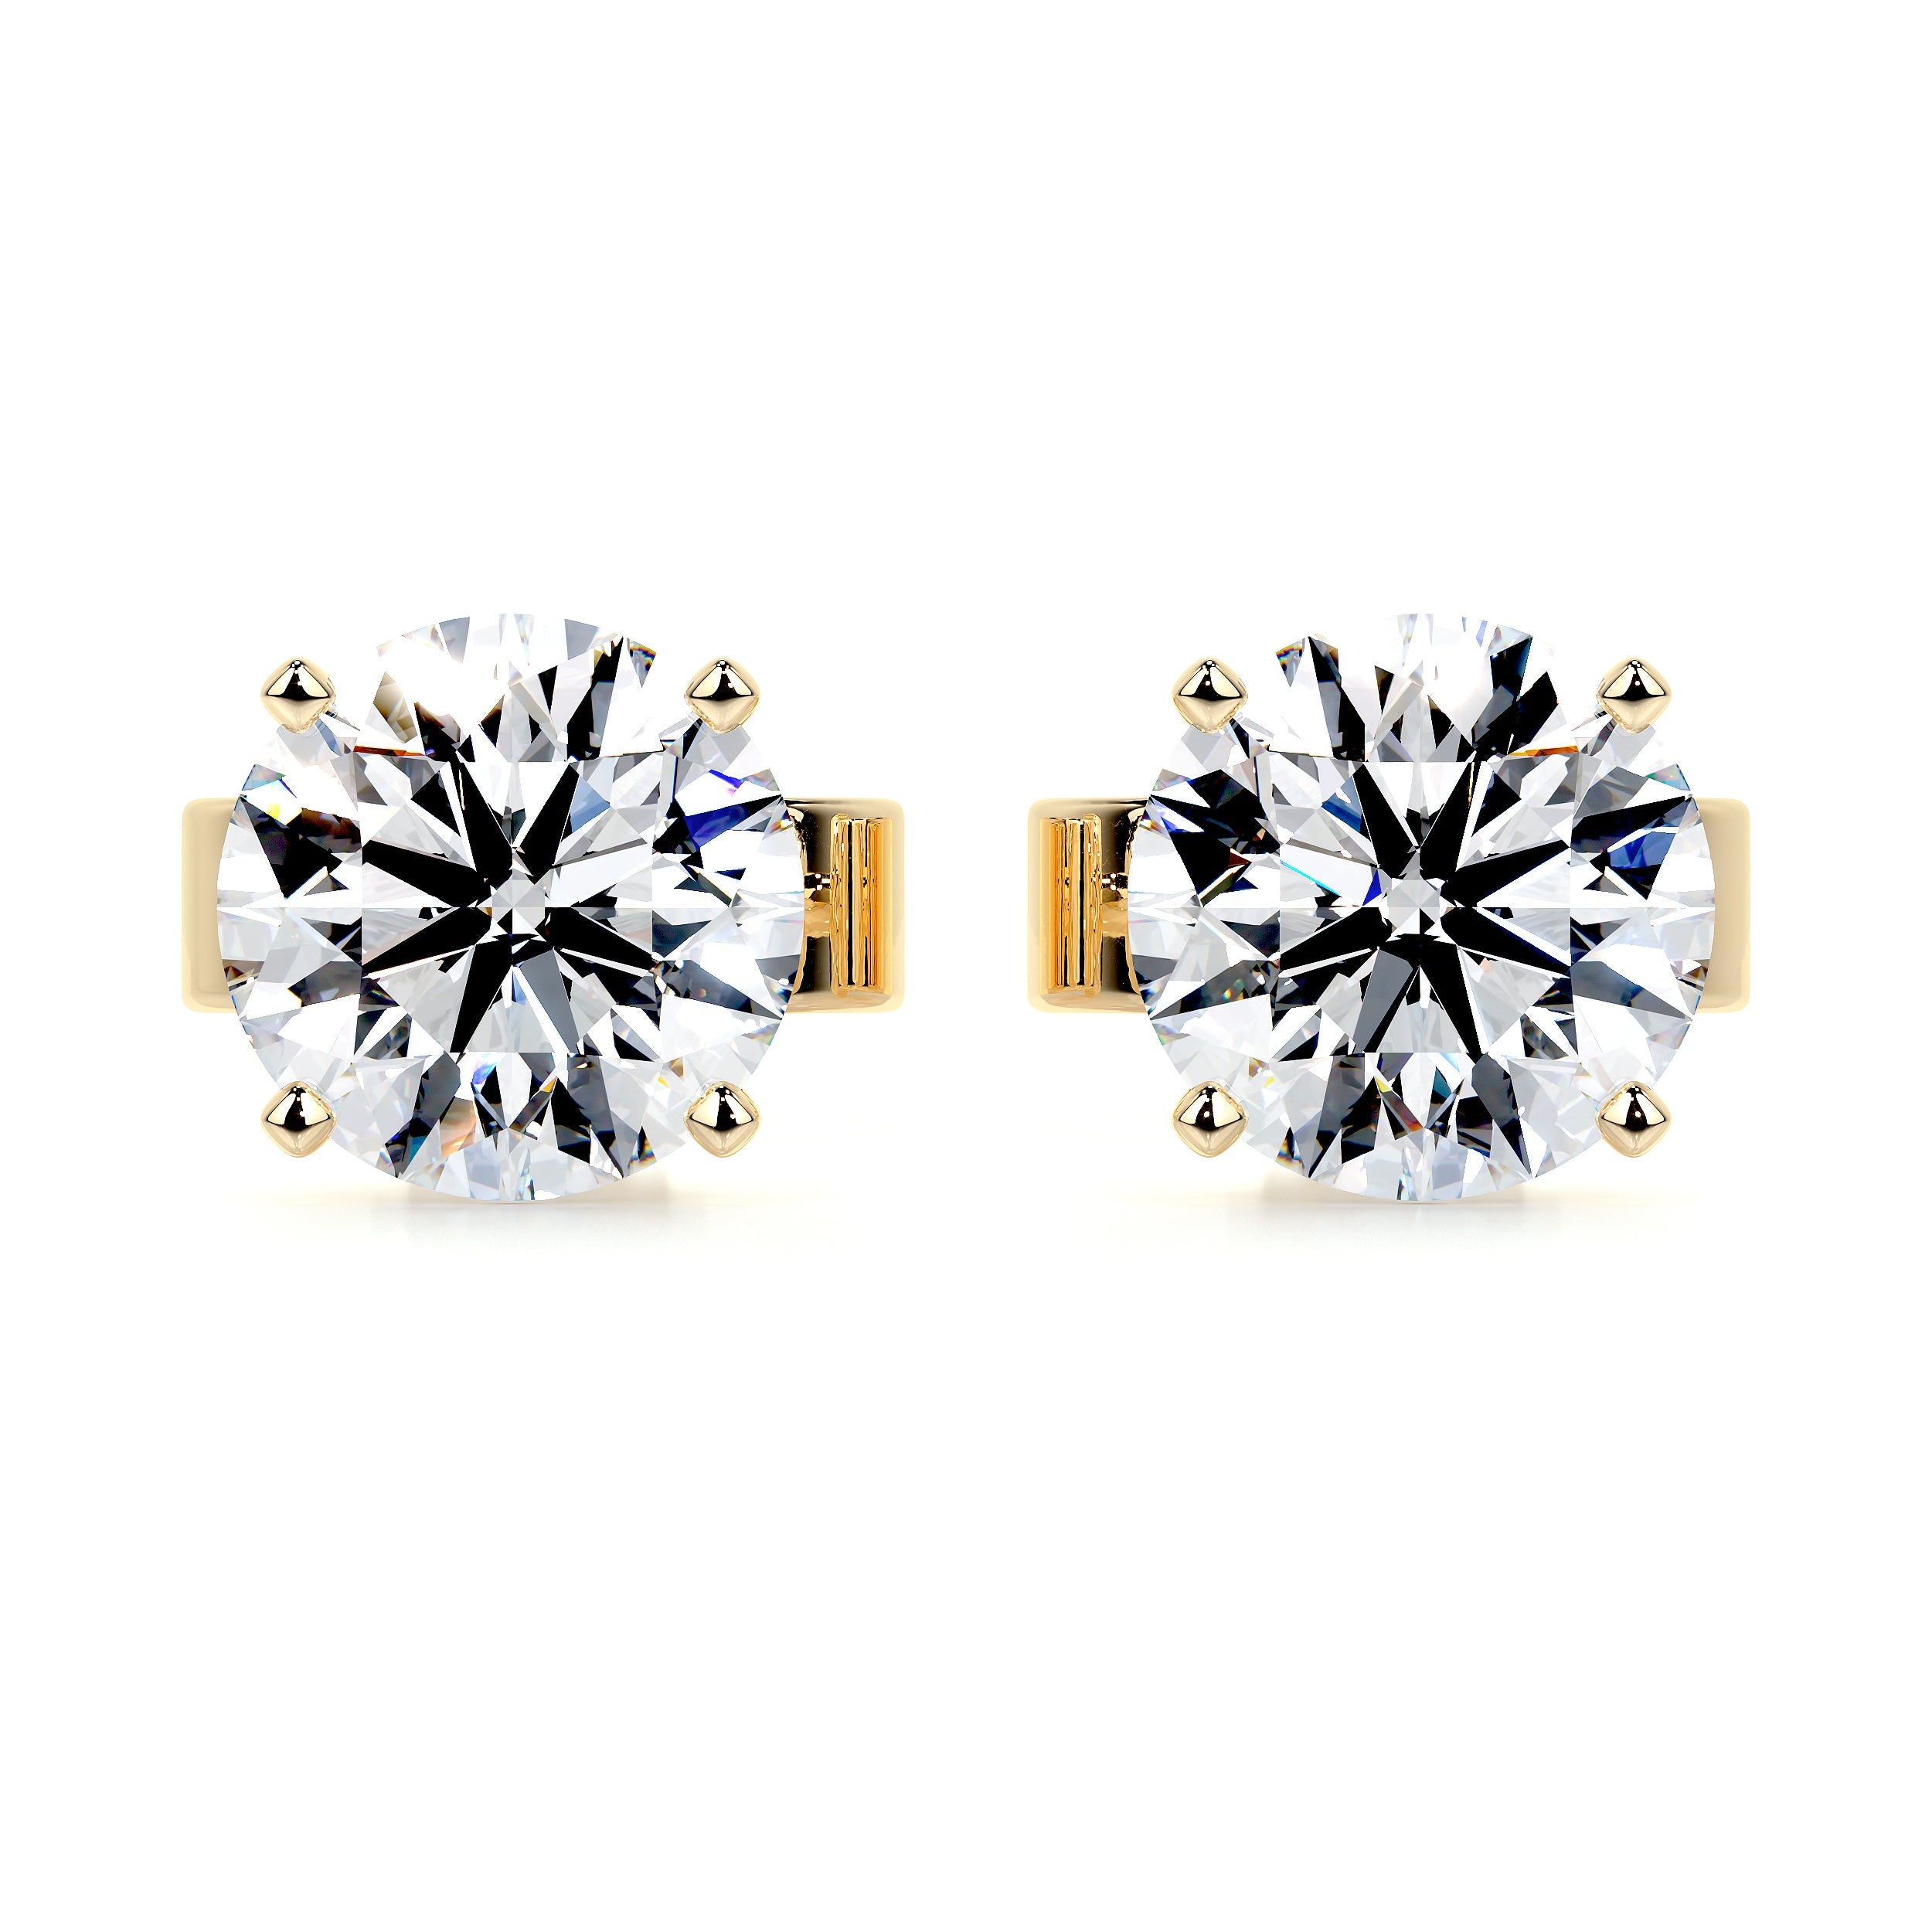 Allen Lab Grown Diamond Earrings   (6 Carat) -18K Yellow Gold